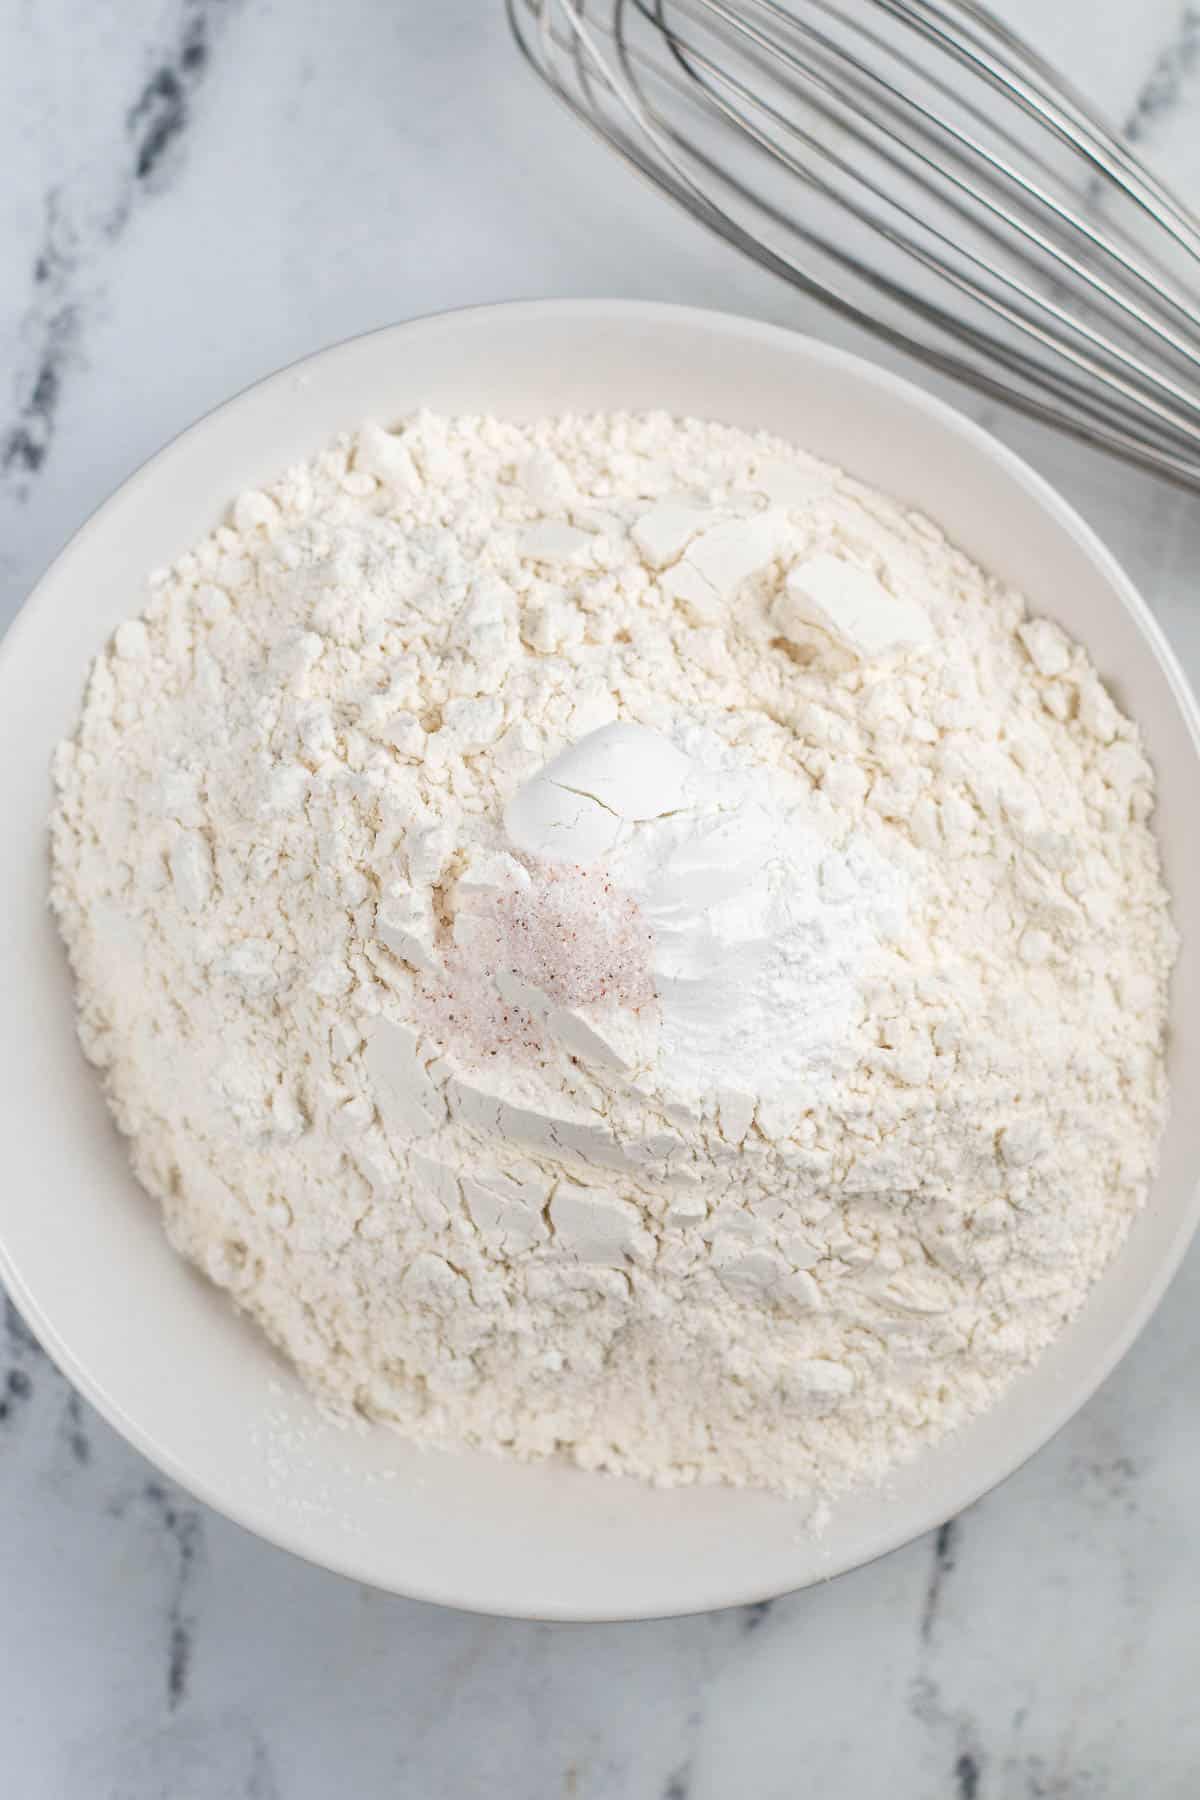 white bowl with flour, baking soda and salt.